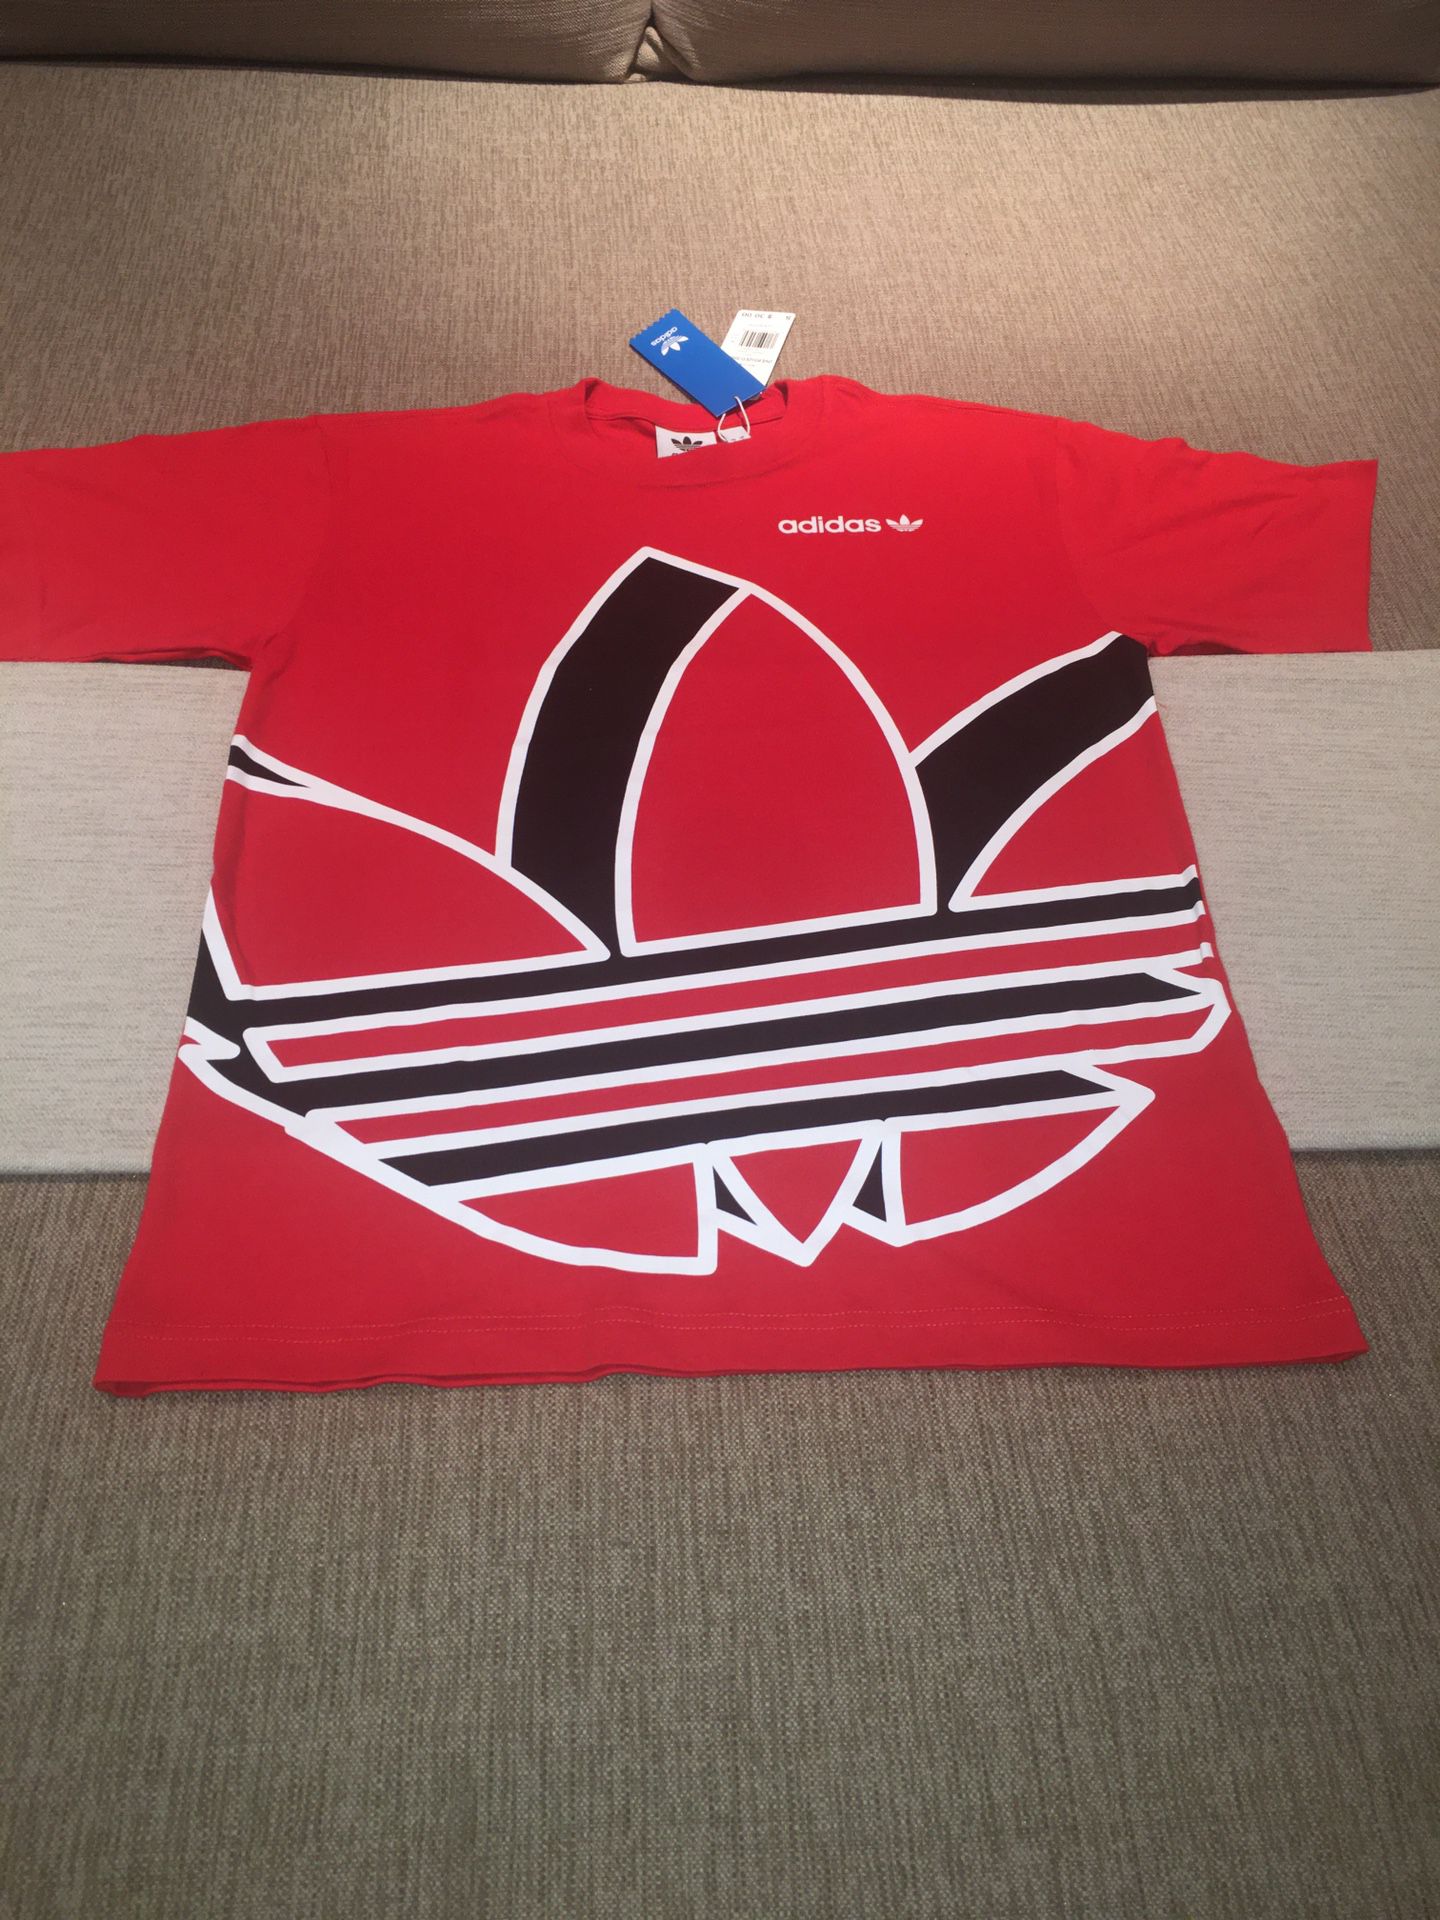 Adidas Originals Big Trefoil S/S T-Shirt -(Size Small)